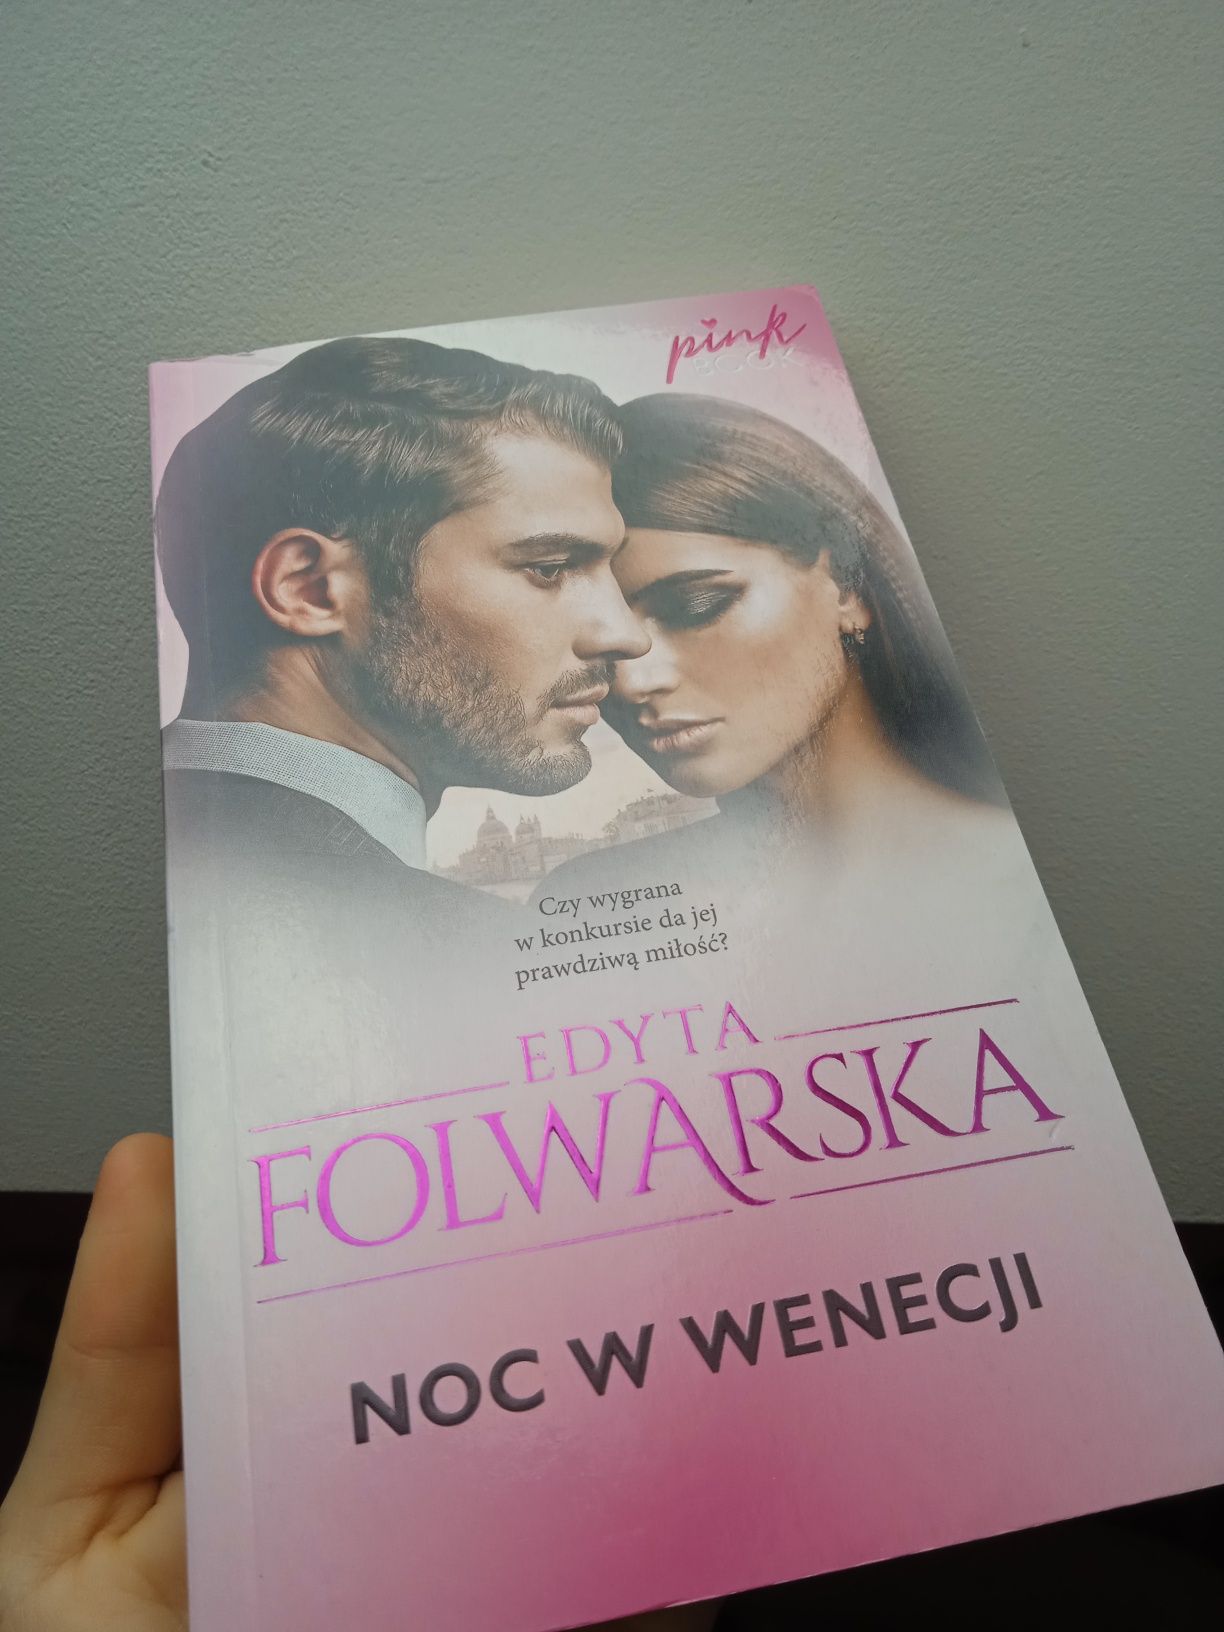 Książka Edyta Folwarska "Noc w Wenecji"